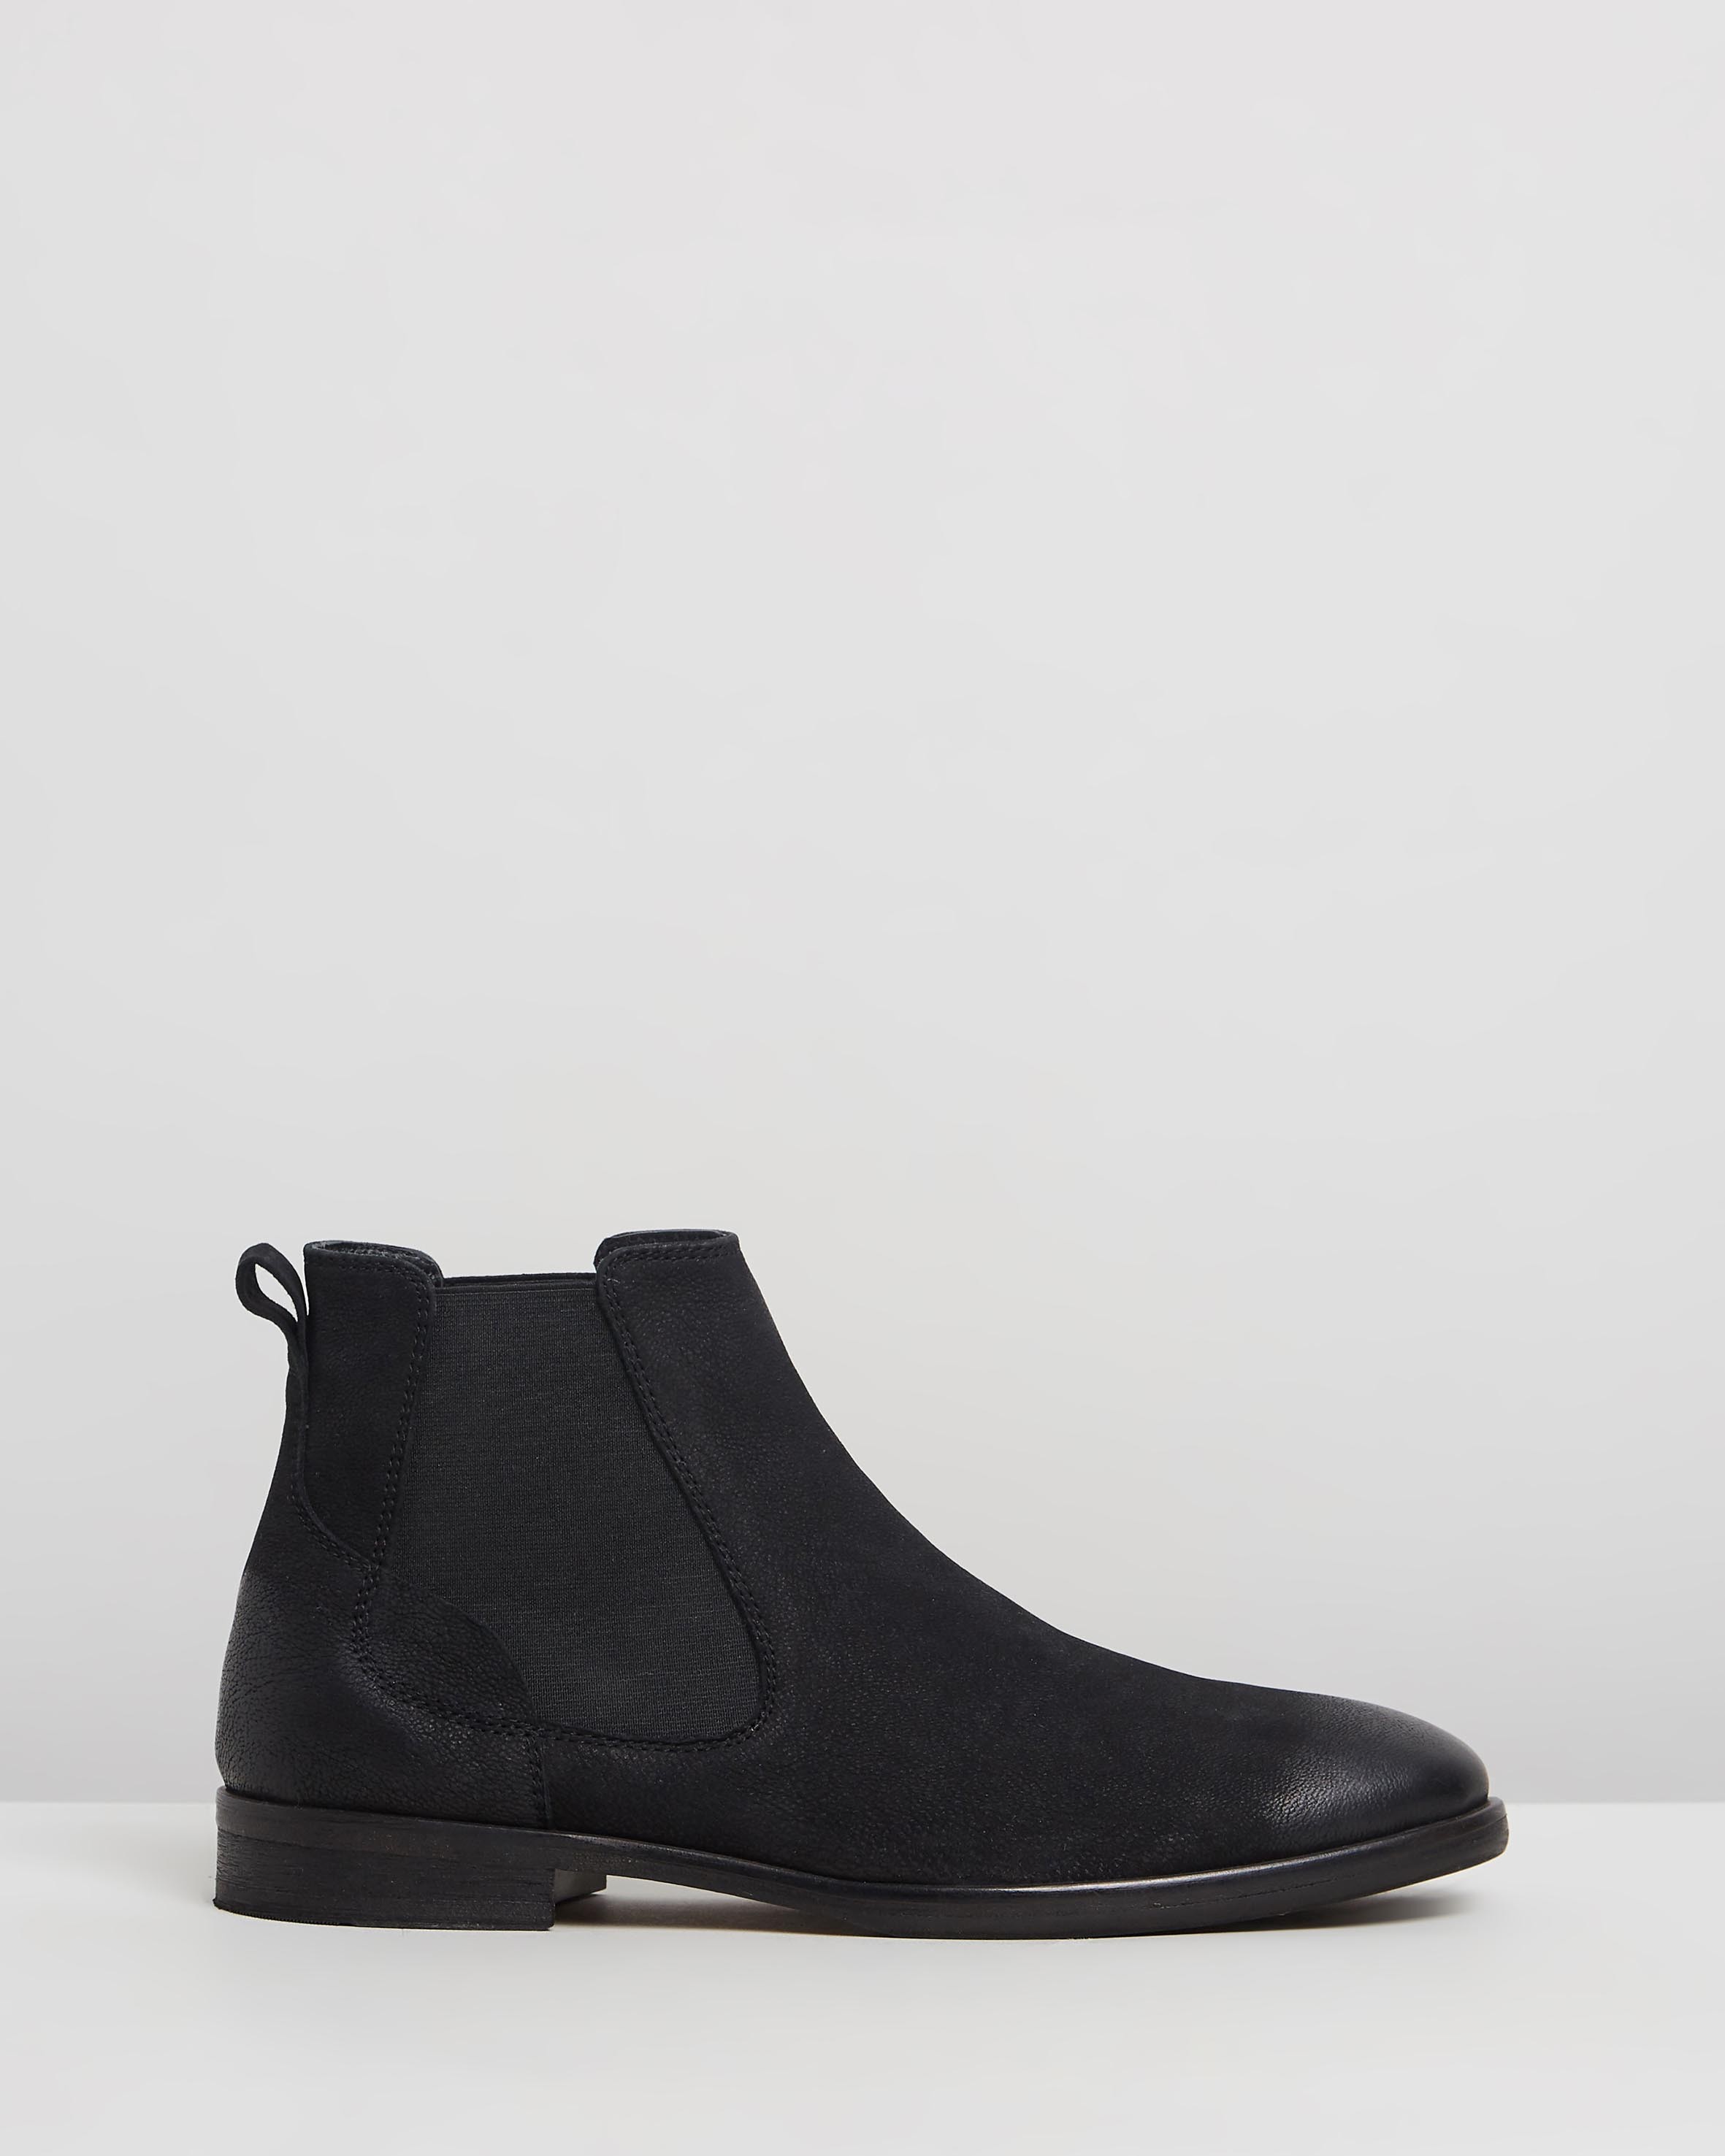 Boardman Leather Chelsea Boots Black by Double Oak Mills | ShoeSales